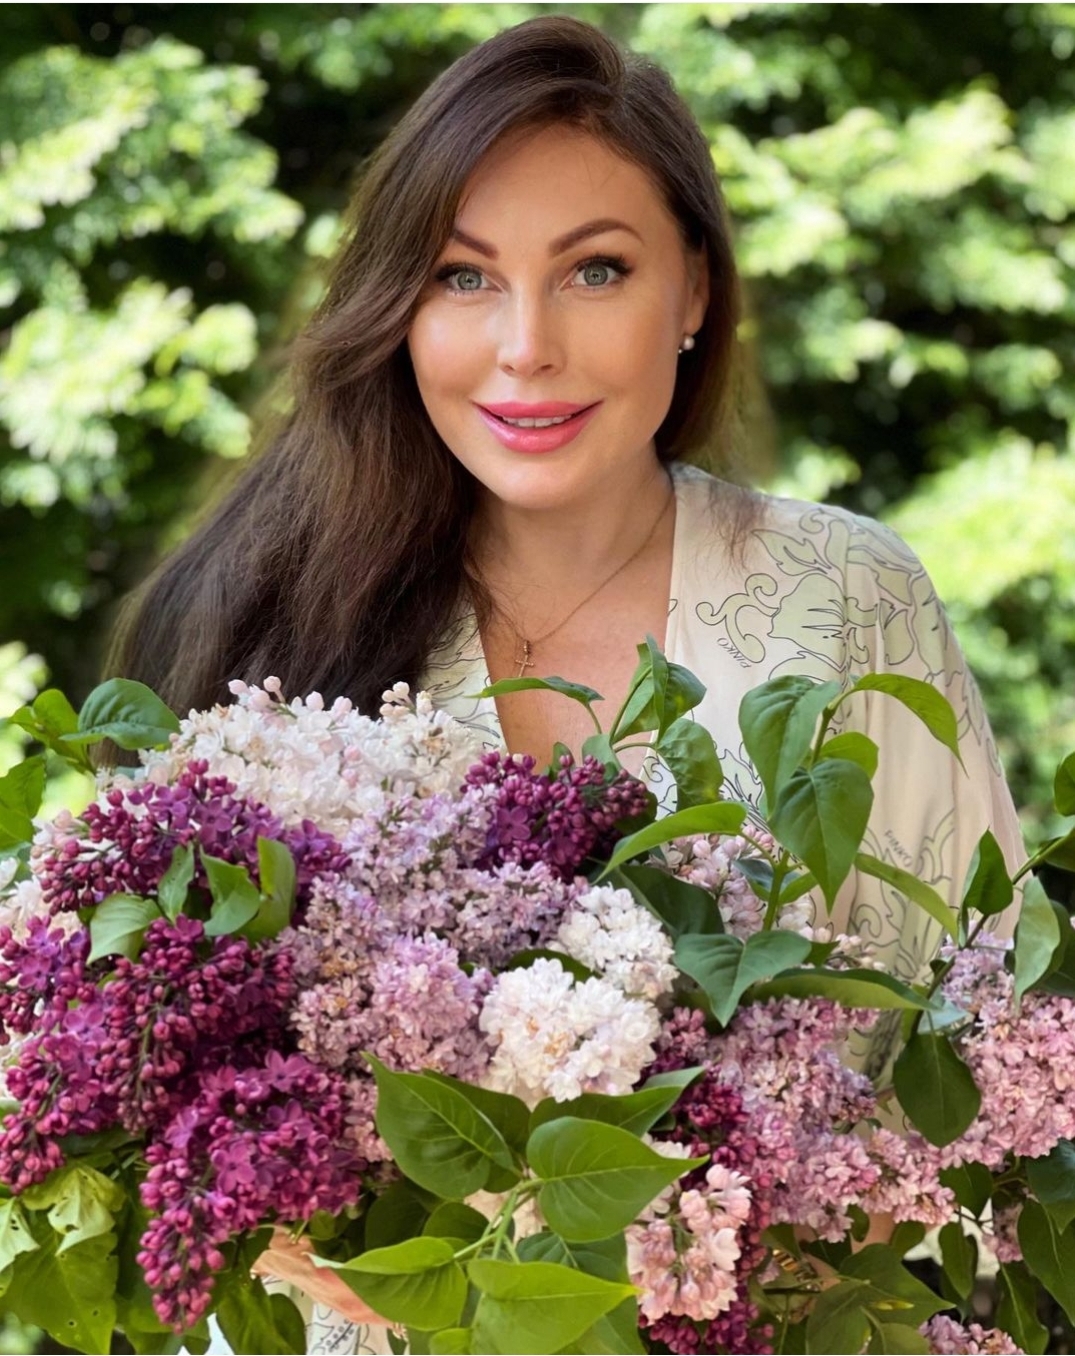 Наталья Бочкарева посадила 120 кустов рассады: «Я вспомнила о своей даче во время пандемии»